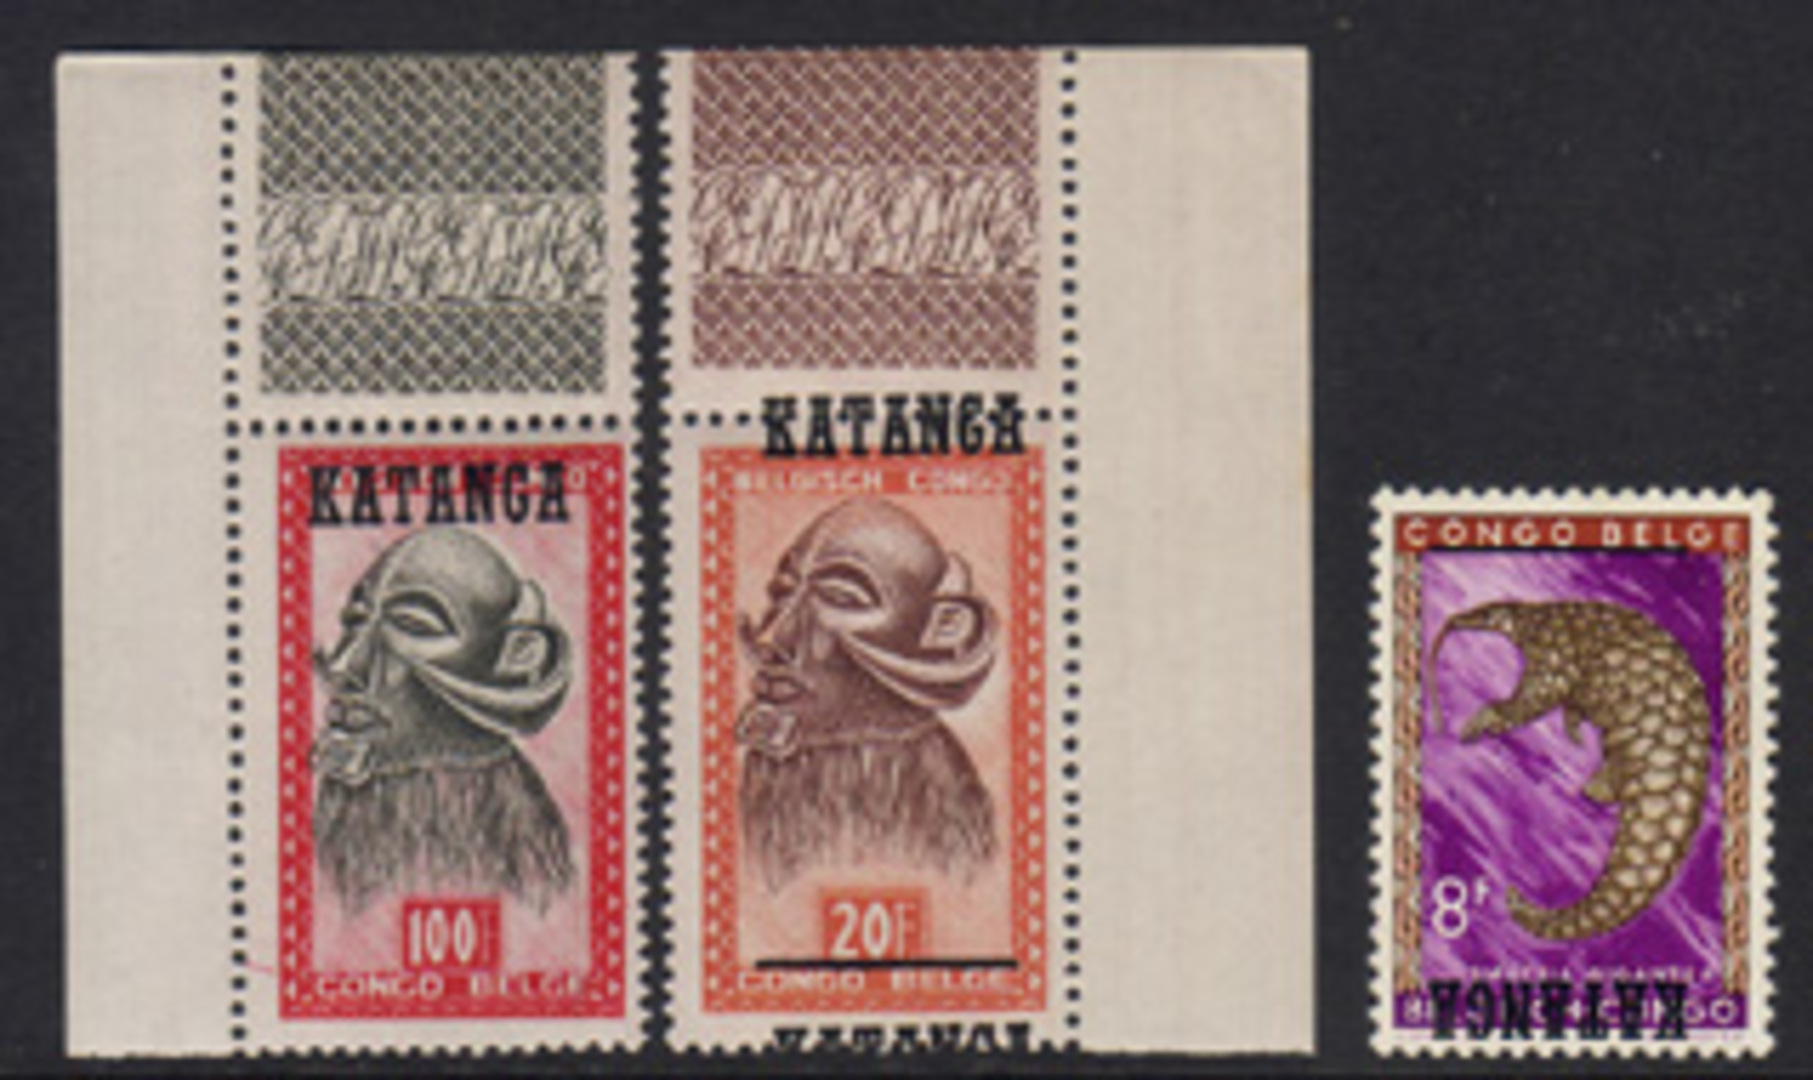 Katanga stamp collection